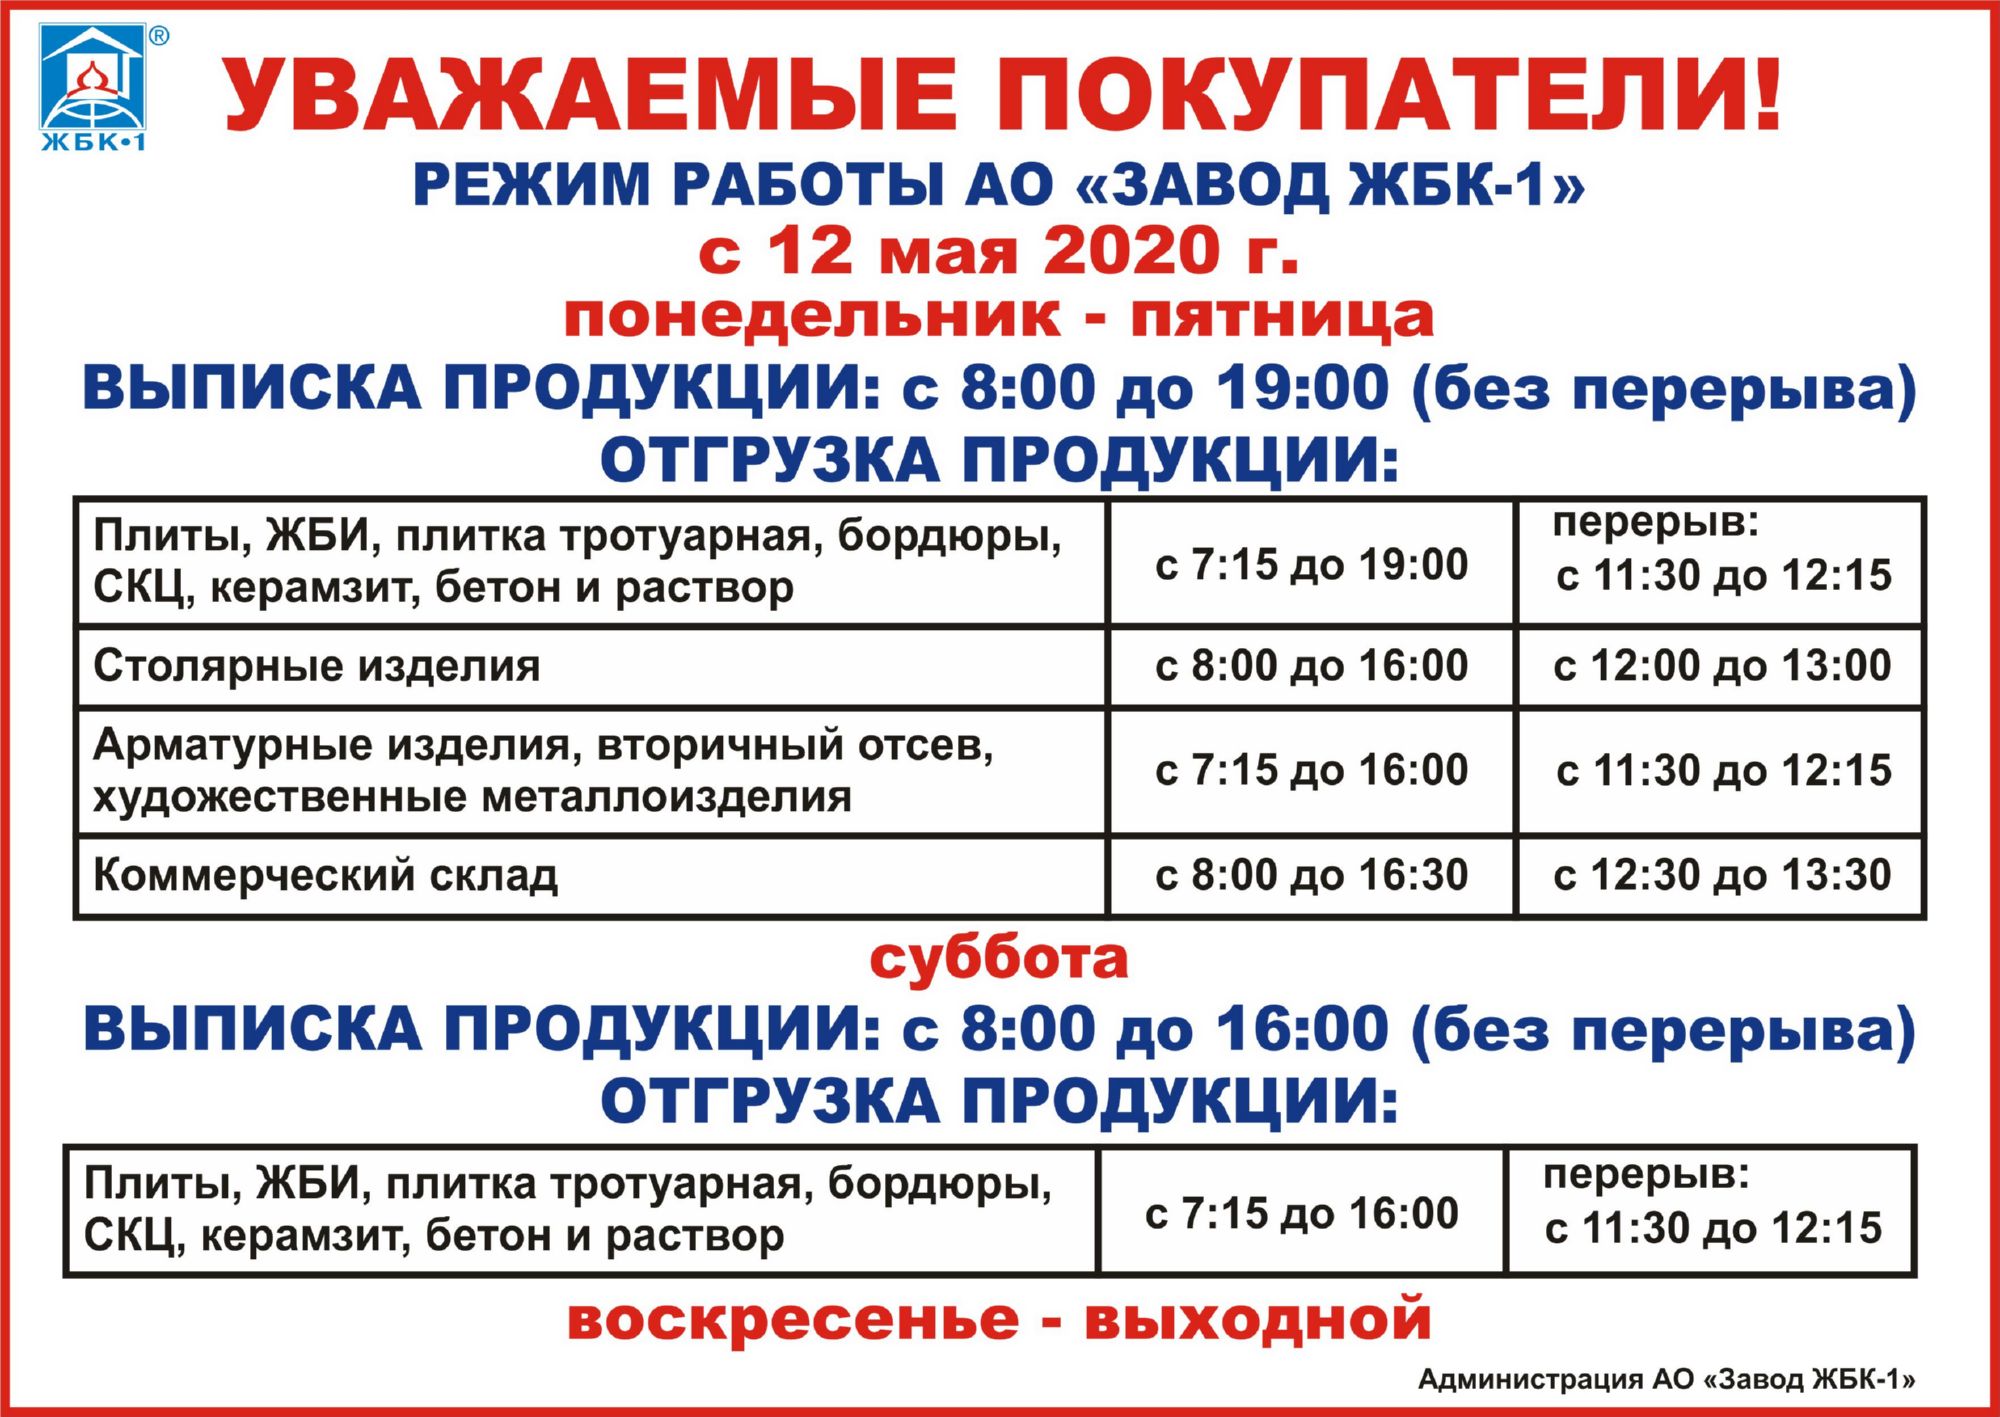 РЕЖИМ РАБОТЫ АО "ЗАВОД ЖБК-1" С 12.05.2020